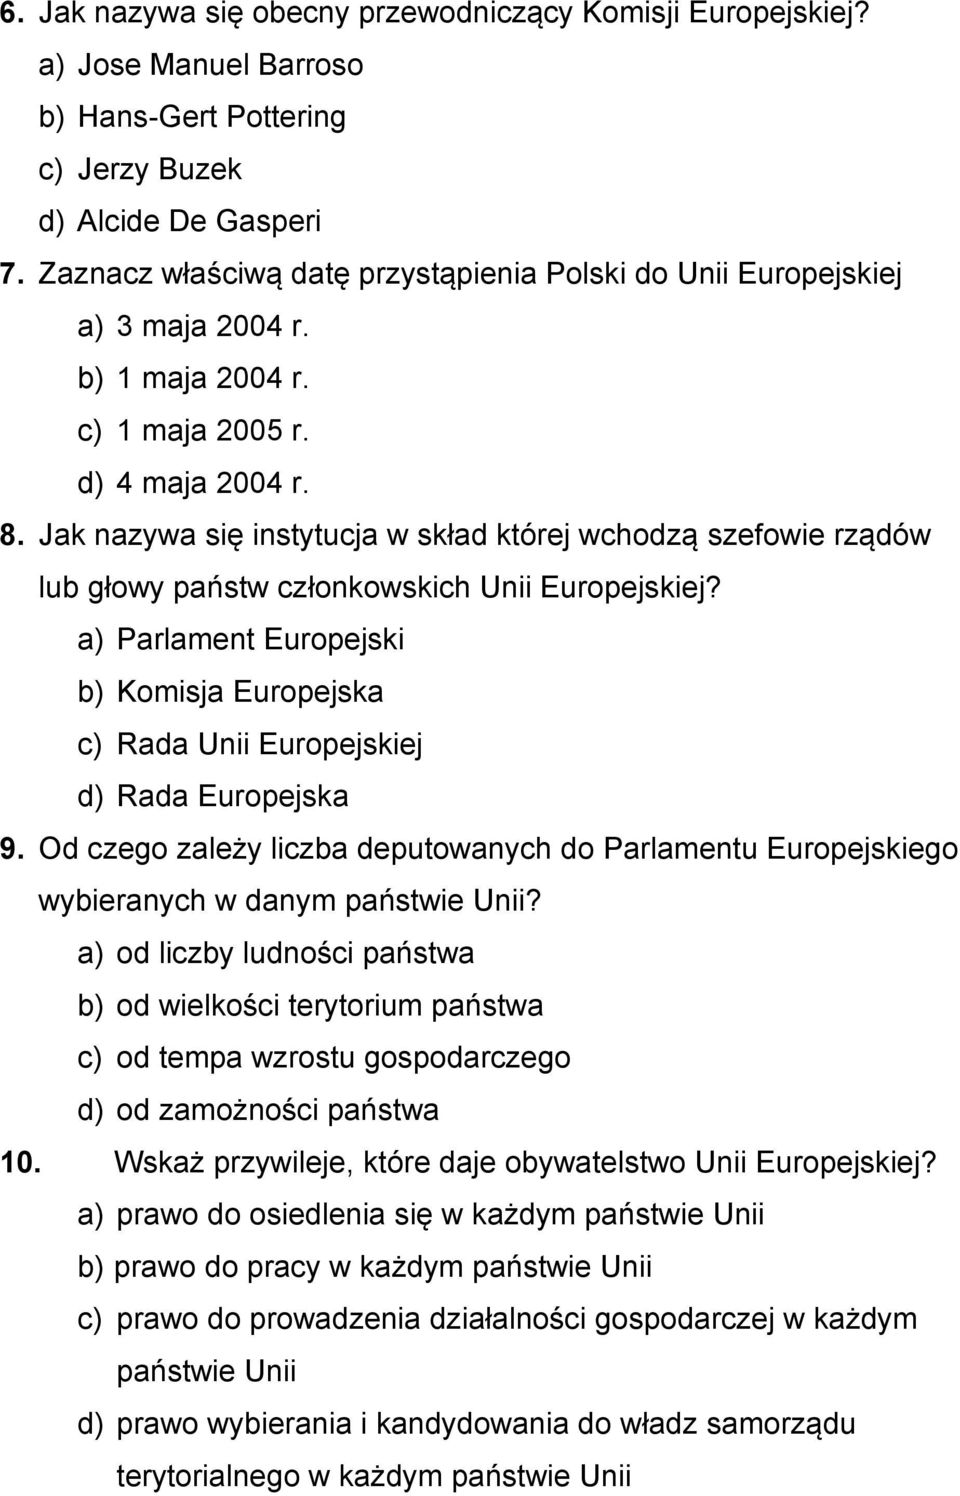 Konkurs wiedzy o Unii Europejskiej pytania dla gimnazjum Maj 2014 r.  Zaznacz właściwą odpowiedź lub odpowiedzi - PDF Darmowe pobieranie